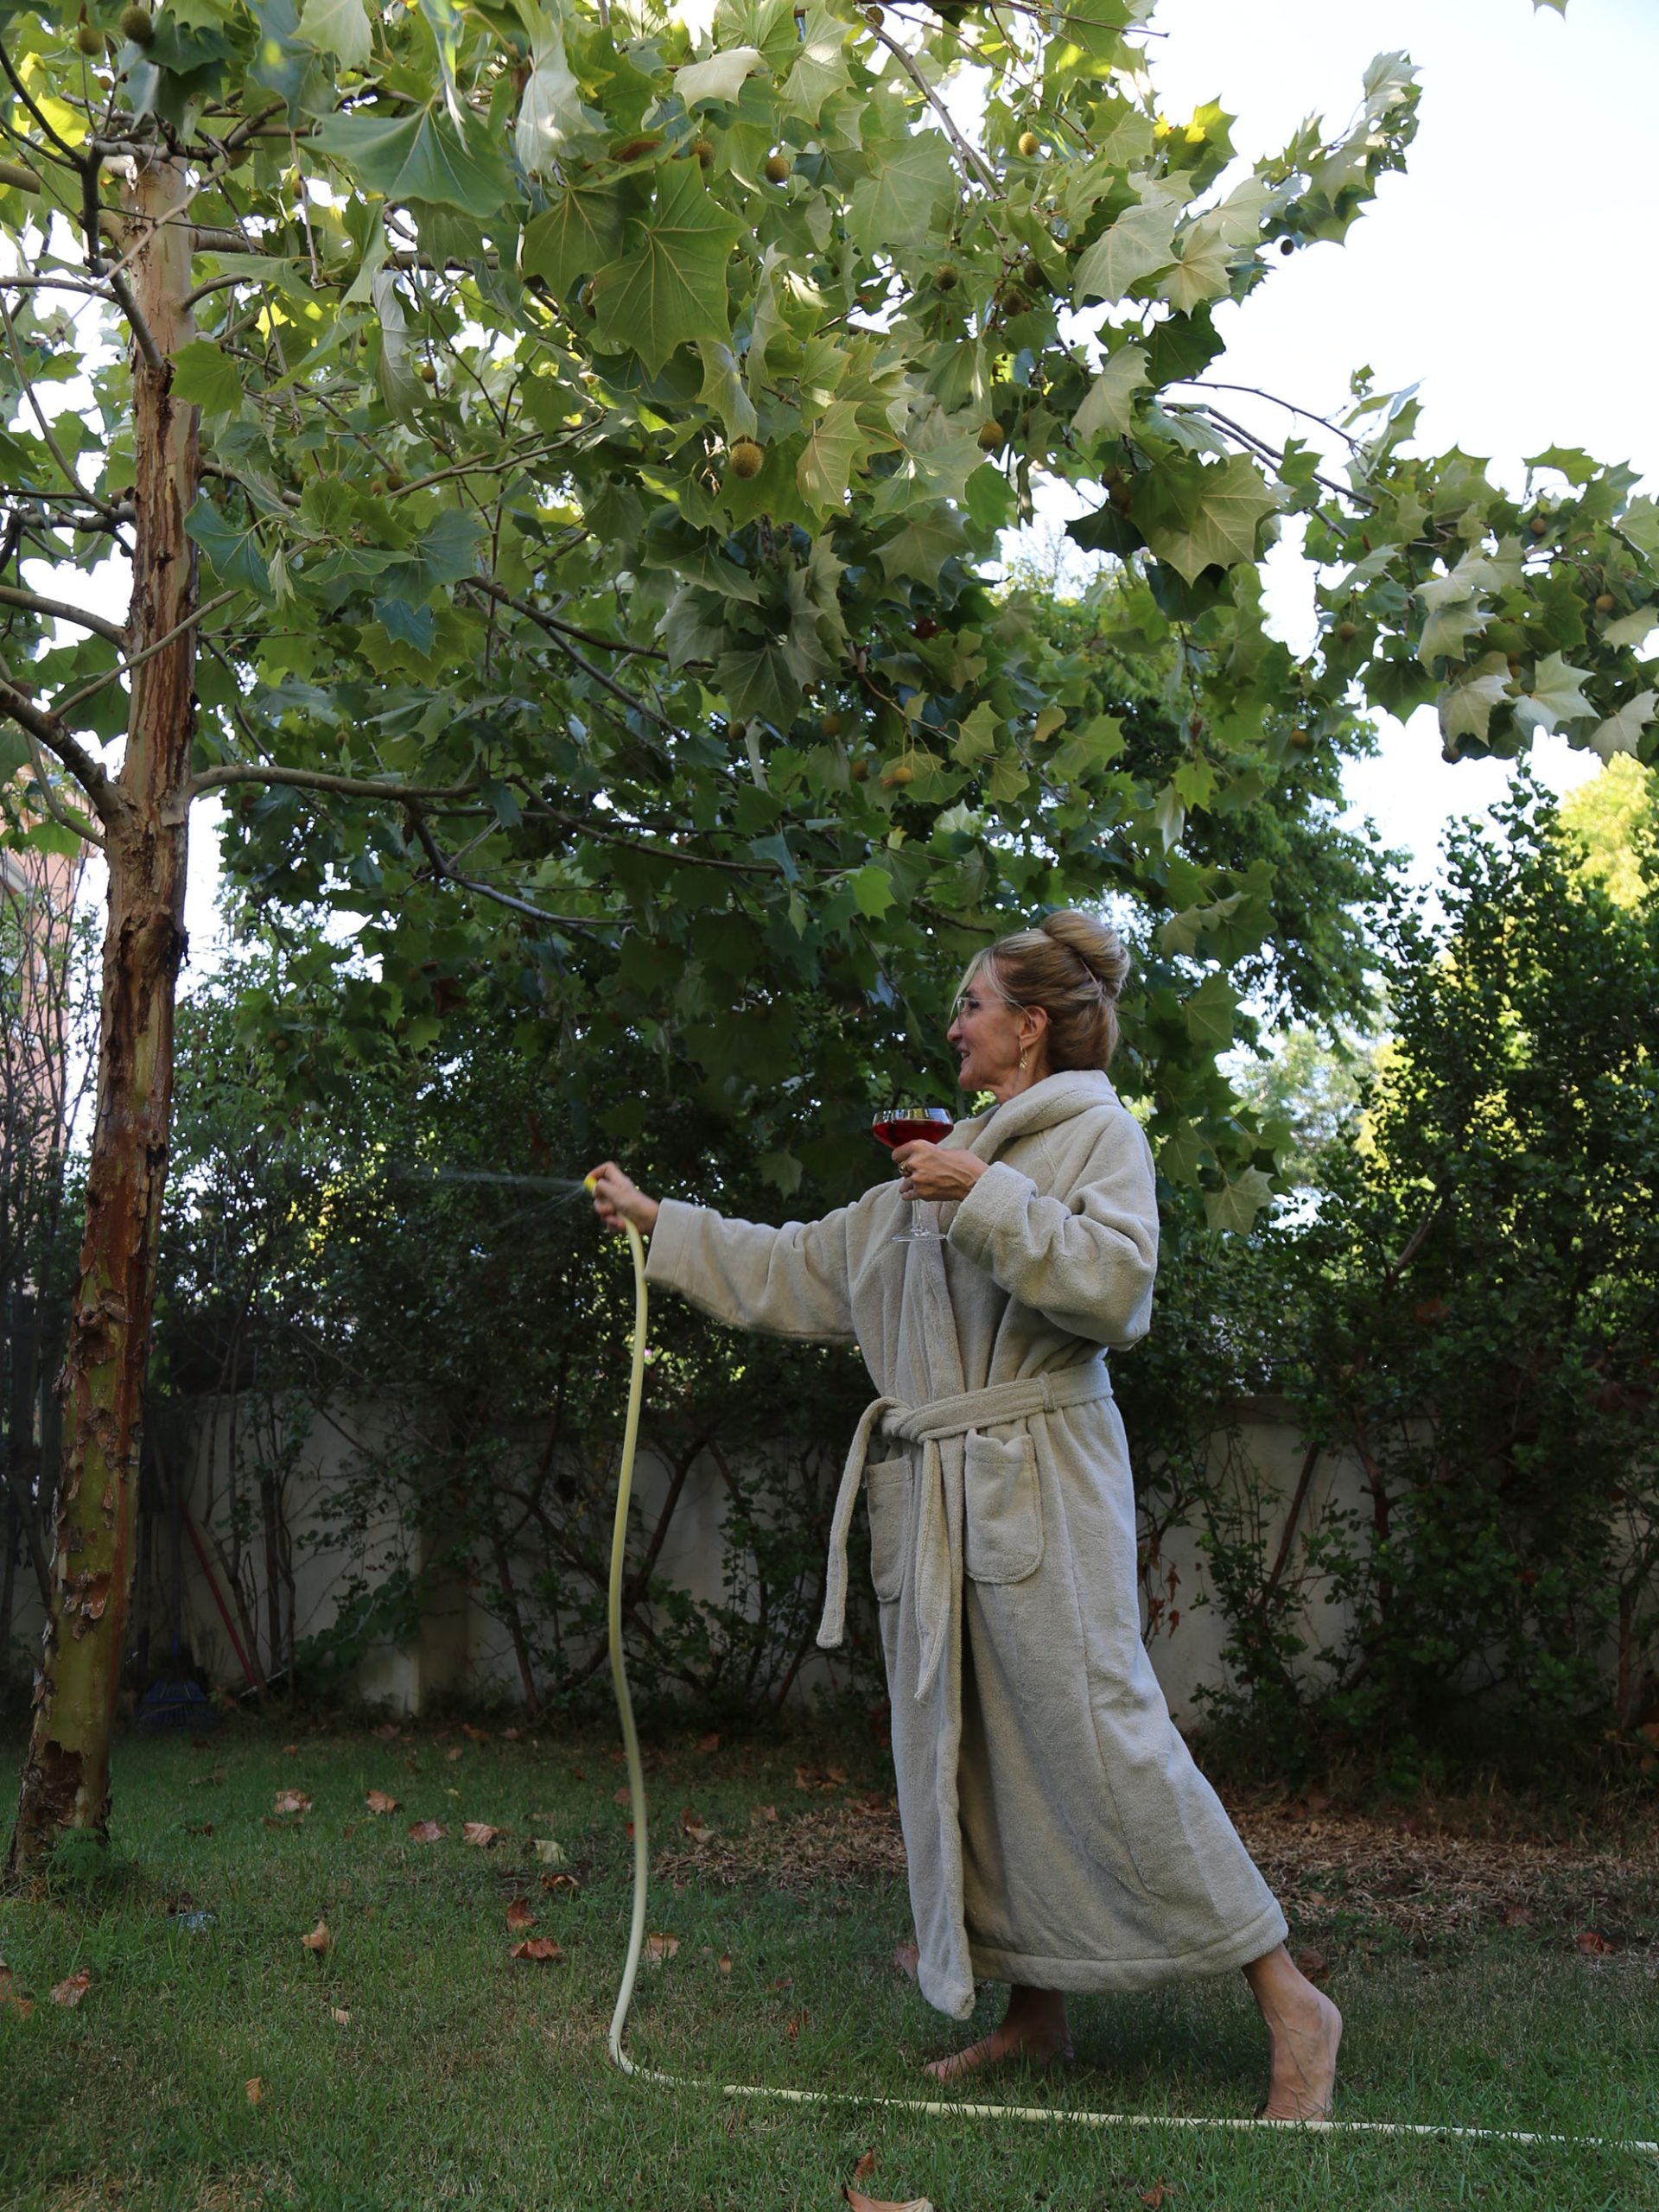 אישה שלובשת חלוק רחצה נמצאת בגינה ומשקה עם צינור עץ 